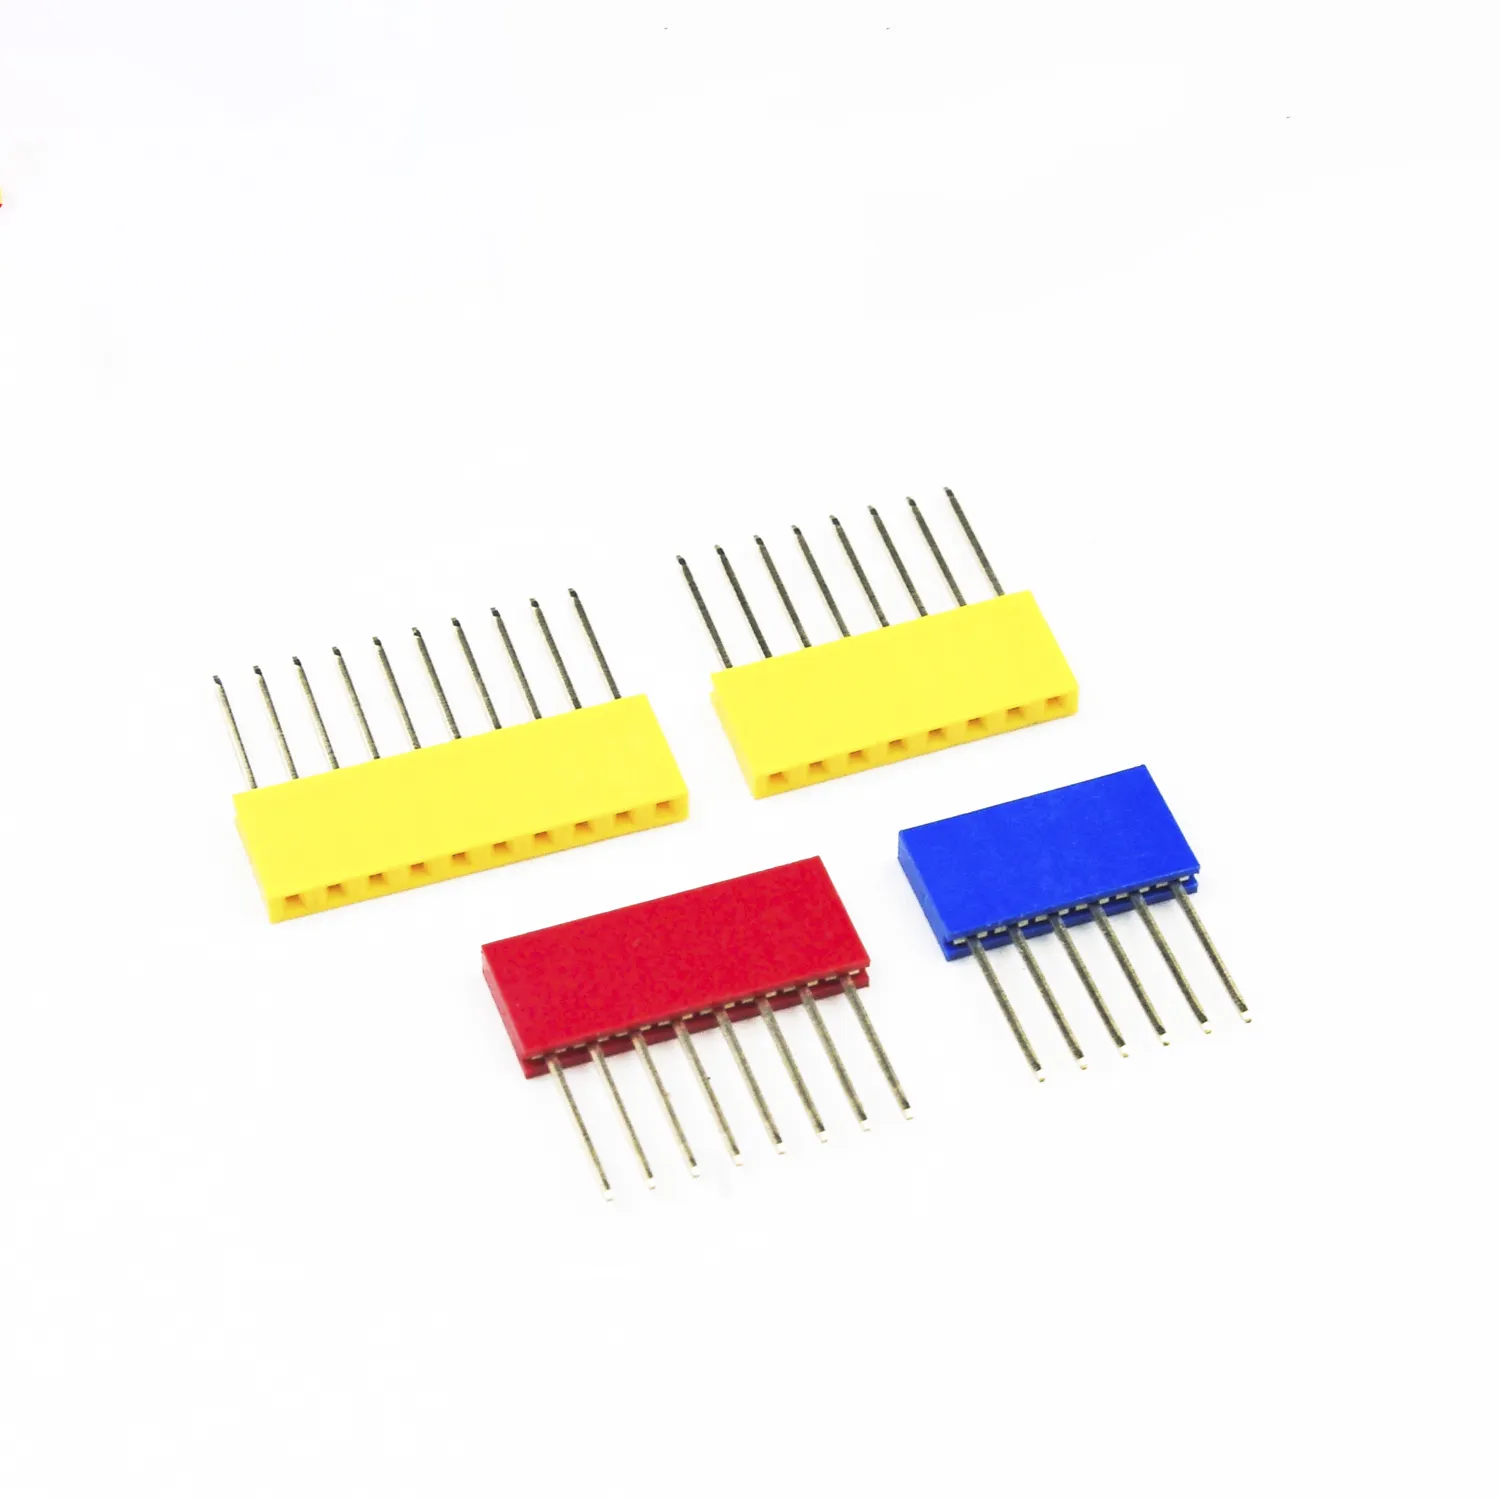 암컷 높이 쌓을 수 있는 헤더 커넥터 소켓 11mm 실드 4 색 검정/빨강/파랑/노랑